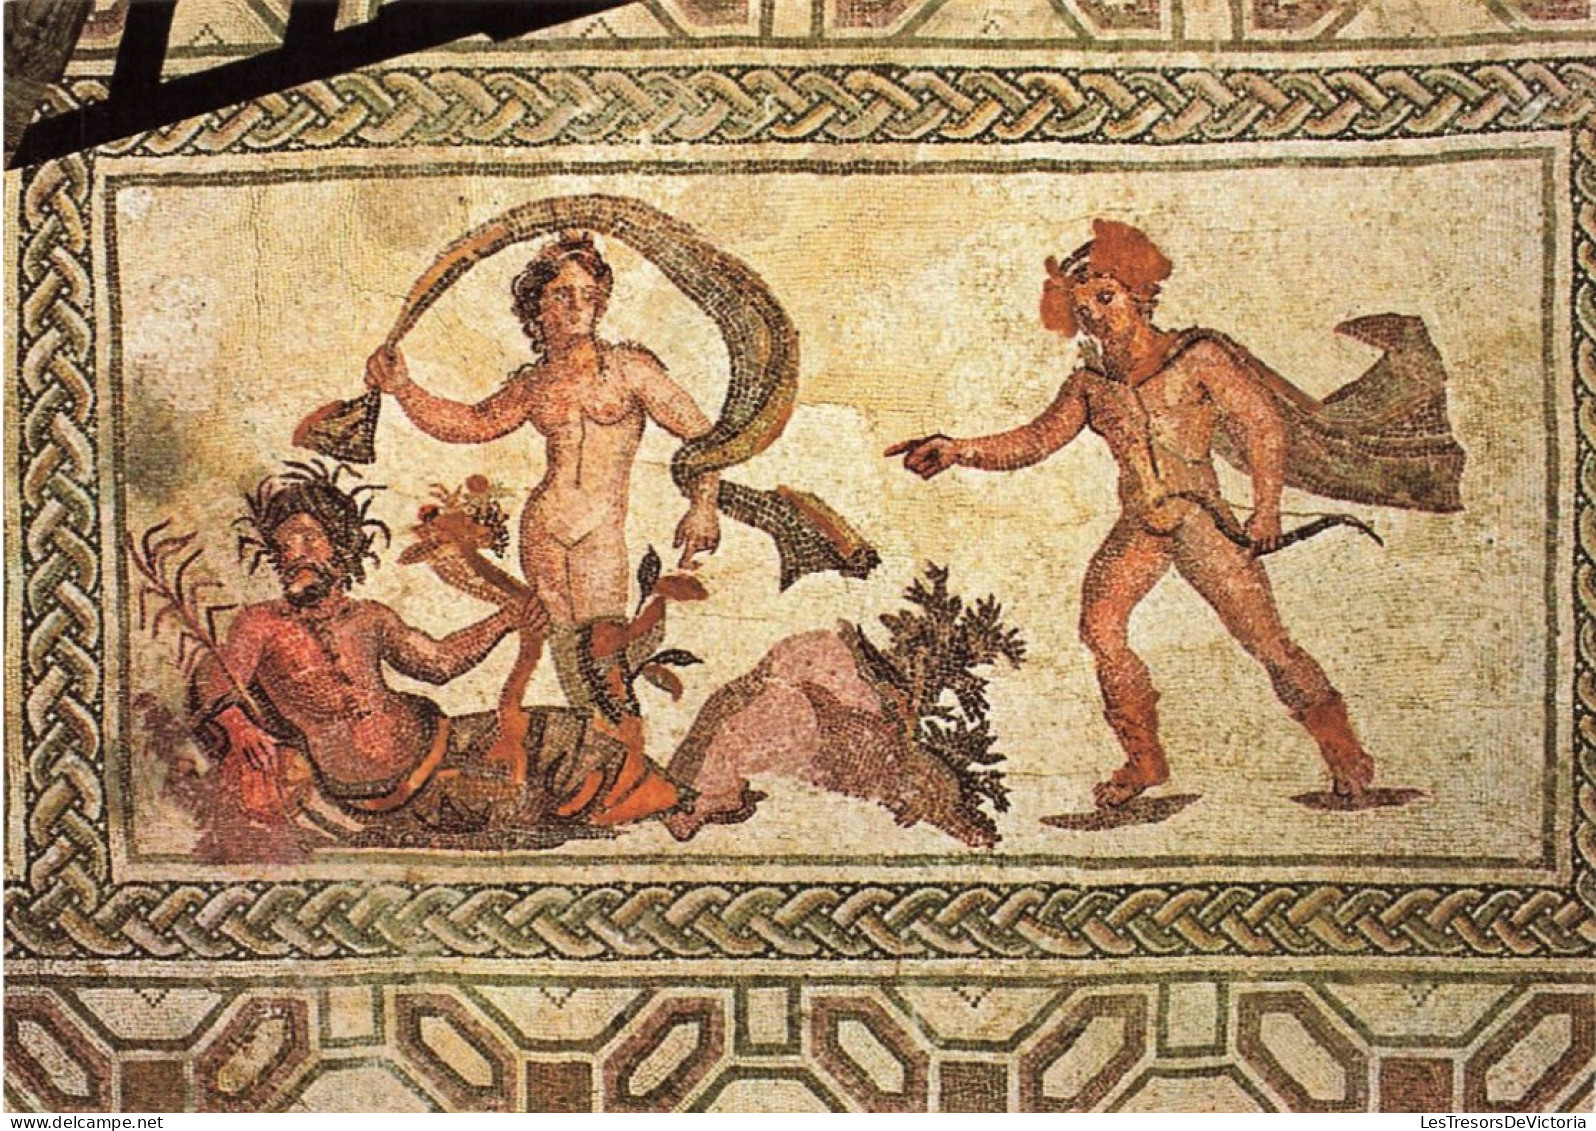 CHYPRE - Apollo Et Daphnè - Mosaïque De La Maison De Dionysos à Paphos - 3e Siècle Ap. J.C - Colorisé - Carte Postale - Chipre